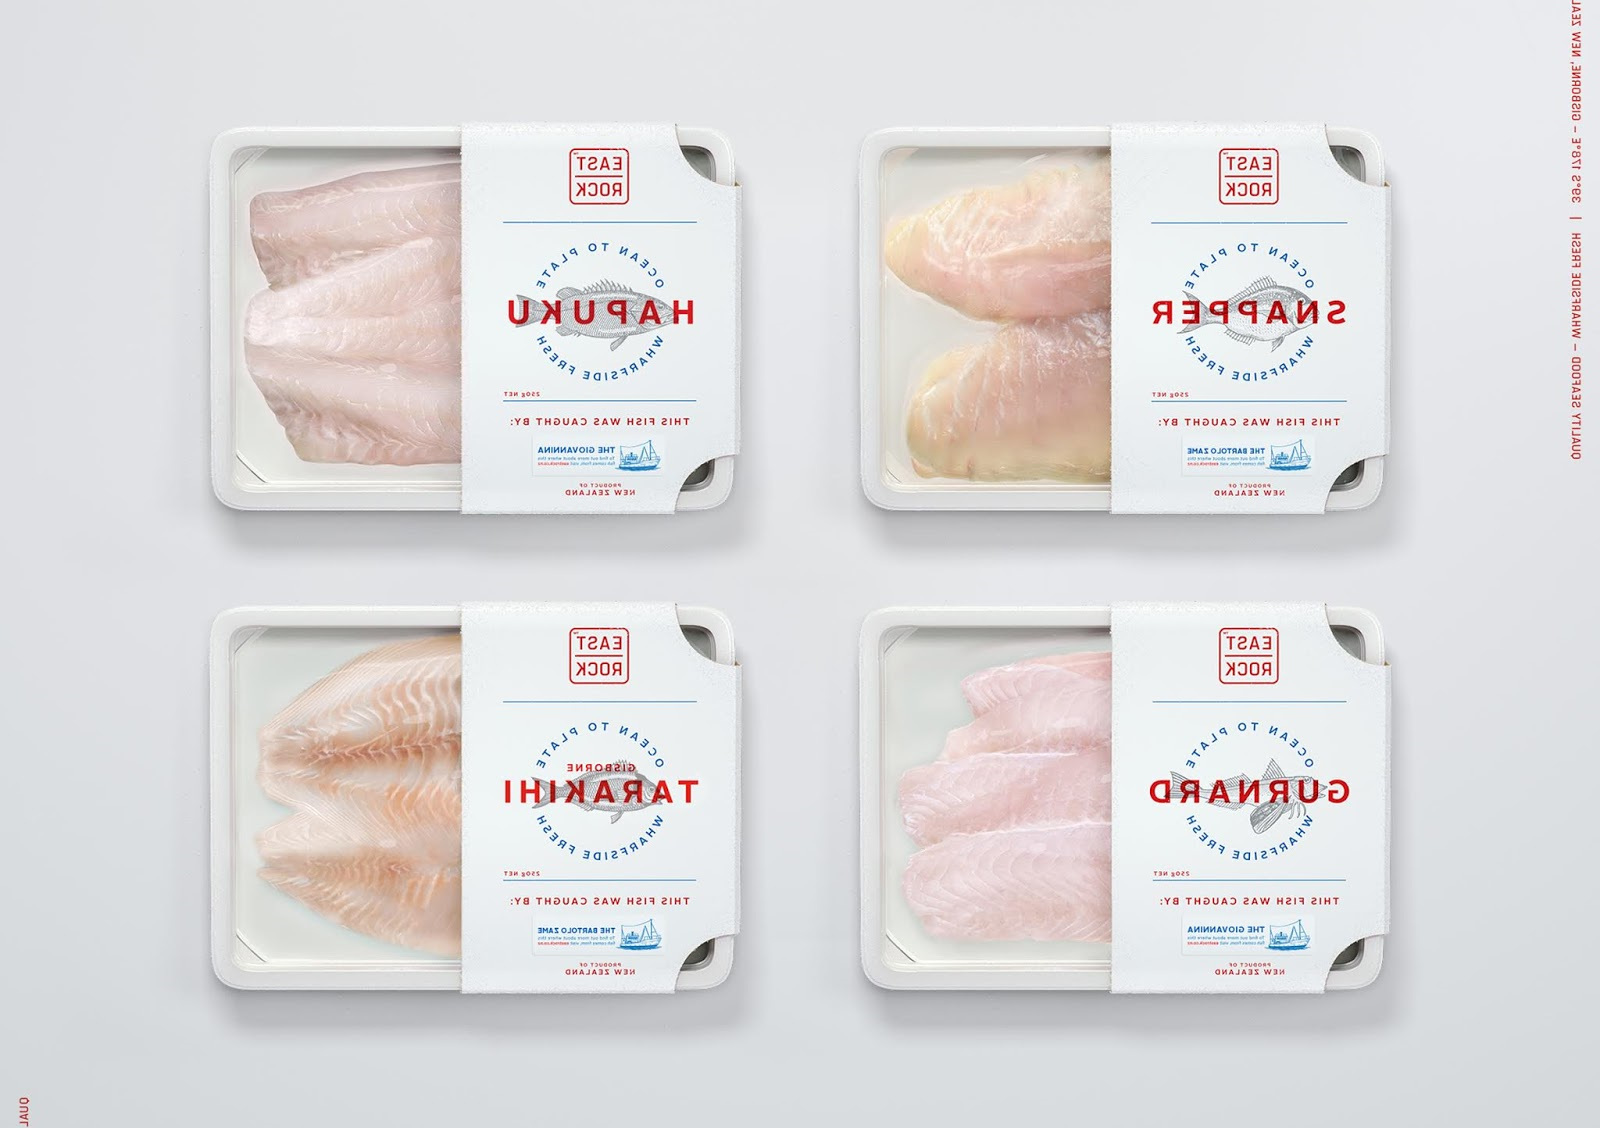 海鲜食品包装西安欧亿体育‧（官方）平台网站
品牌包装设计